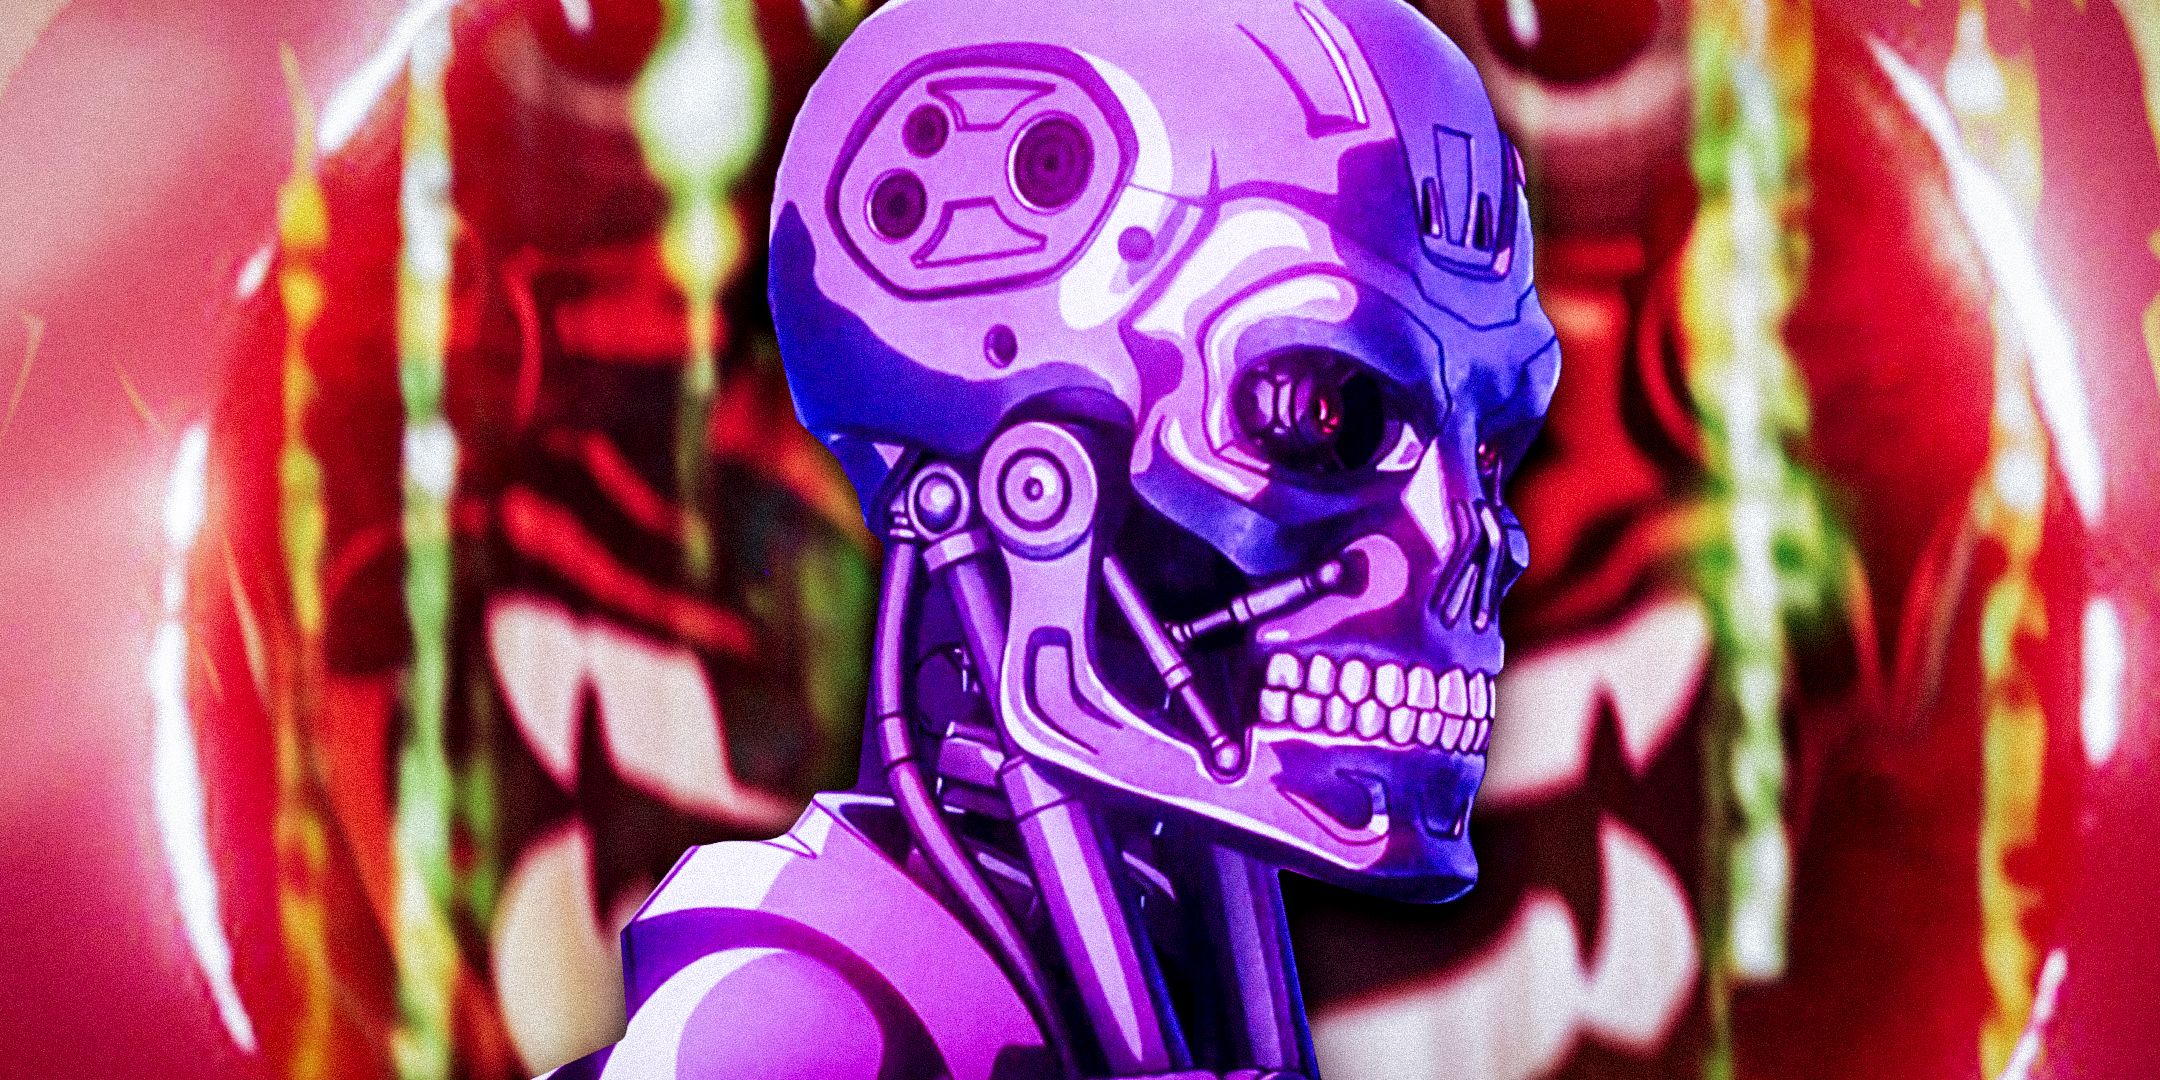 Custom image of Terminator Zero and Animatrix